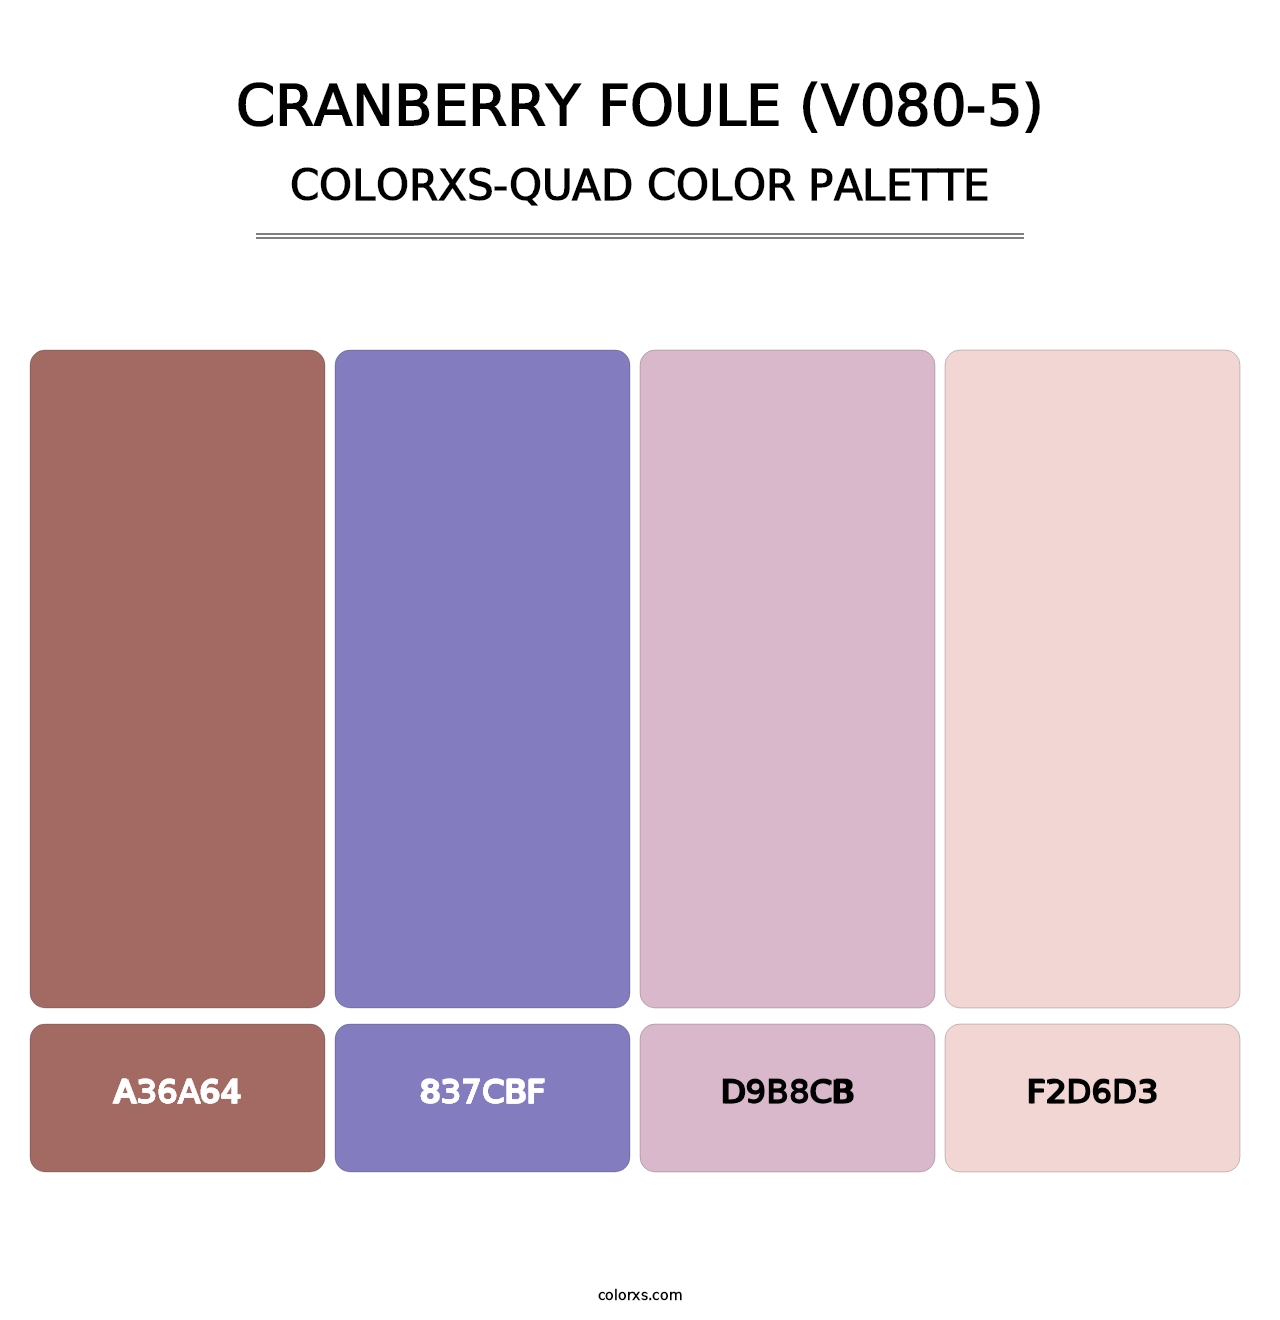 Cranberry Foule (V080-5) - Colorxs Quad Palette